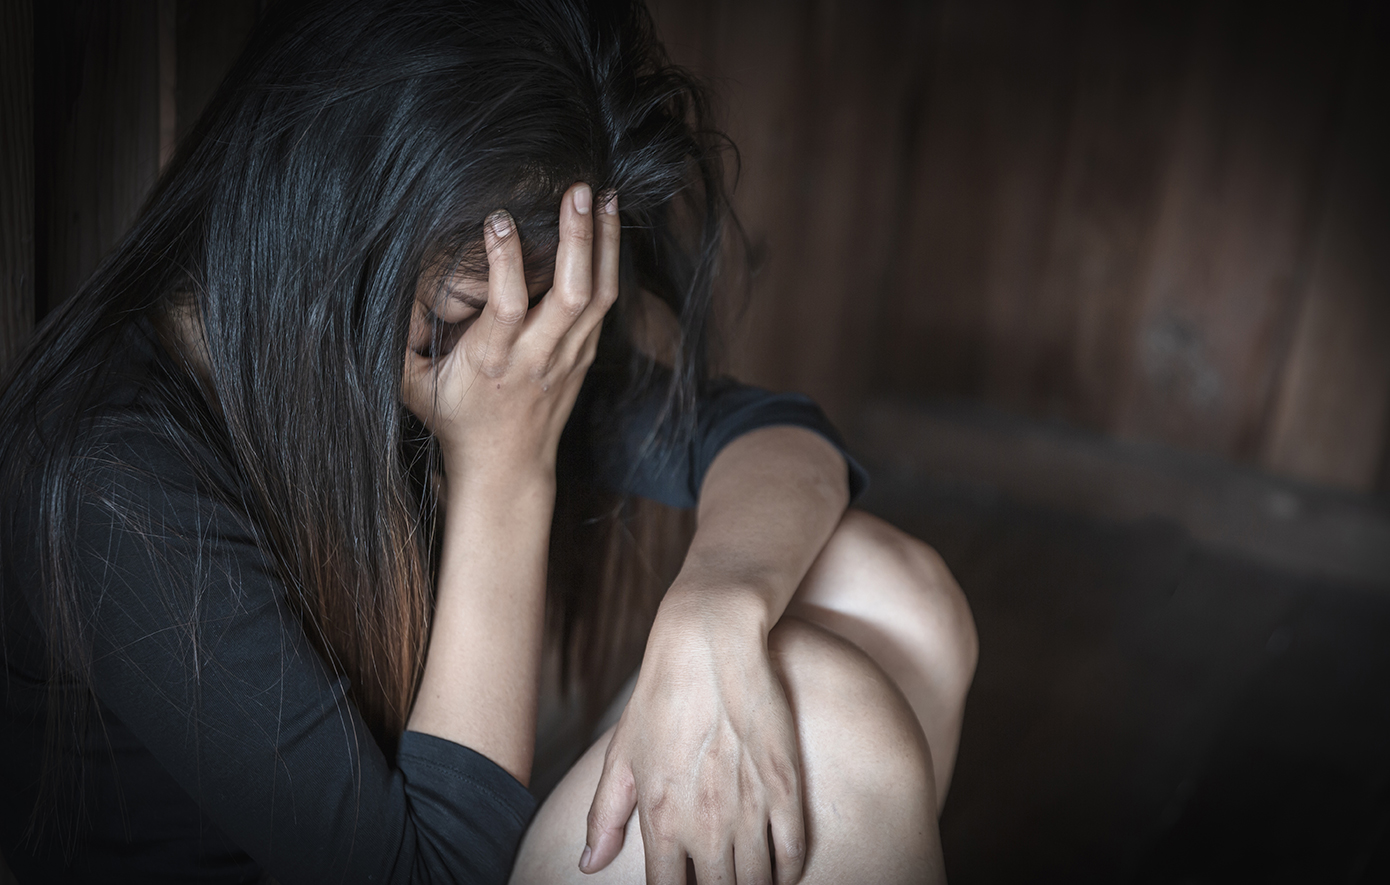 19χρονη από τη Λαμία κατήγγειλε ζευγάρι ότι τη βίασε, ενώ ήταν μεθυσμένη – Έμαθε από φιλικό πρόσωπο ότι την τράβηξαν βίντεο